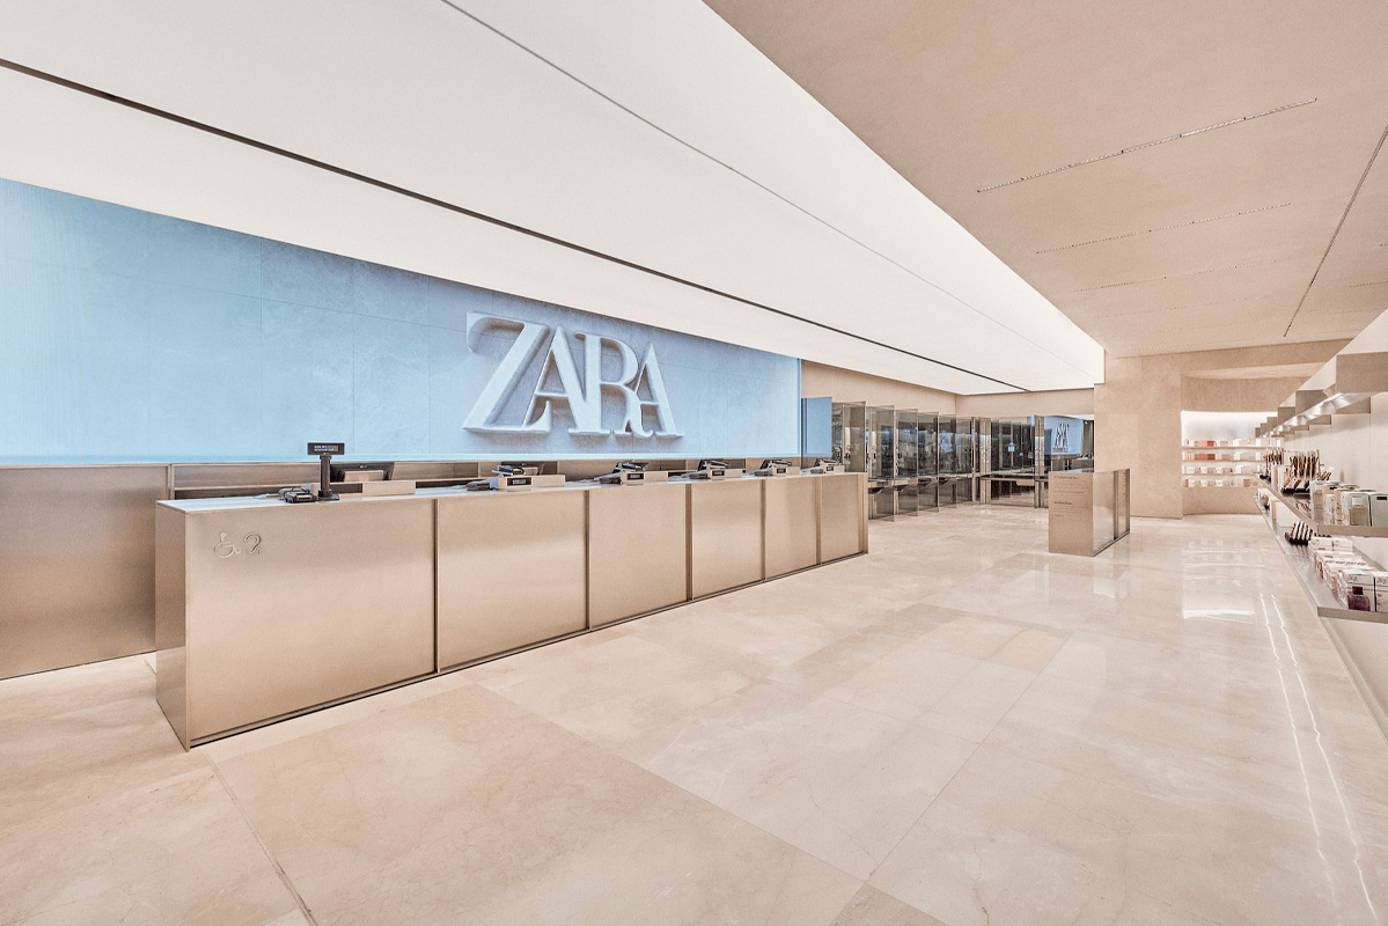 Zara Canada investigated over forced labor